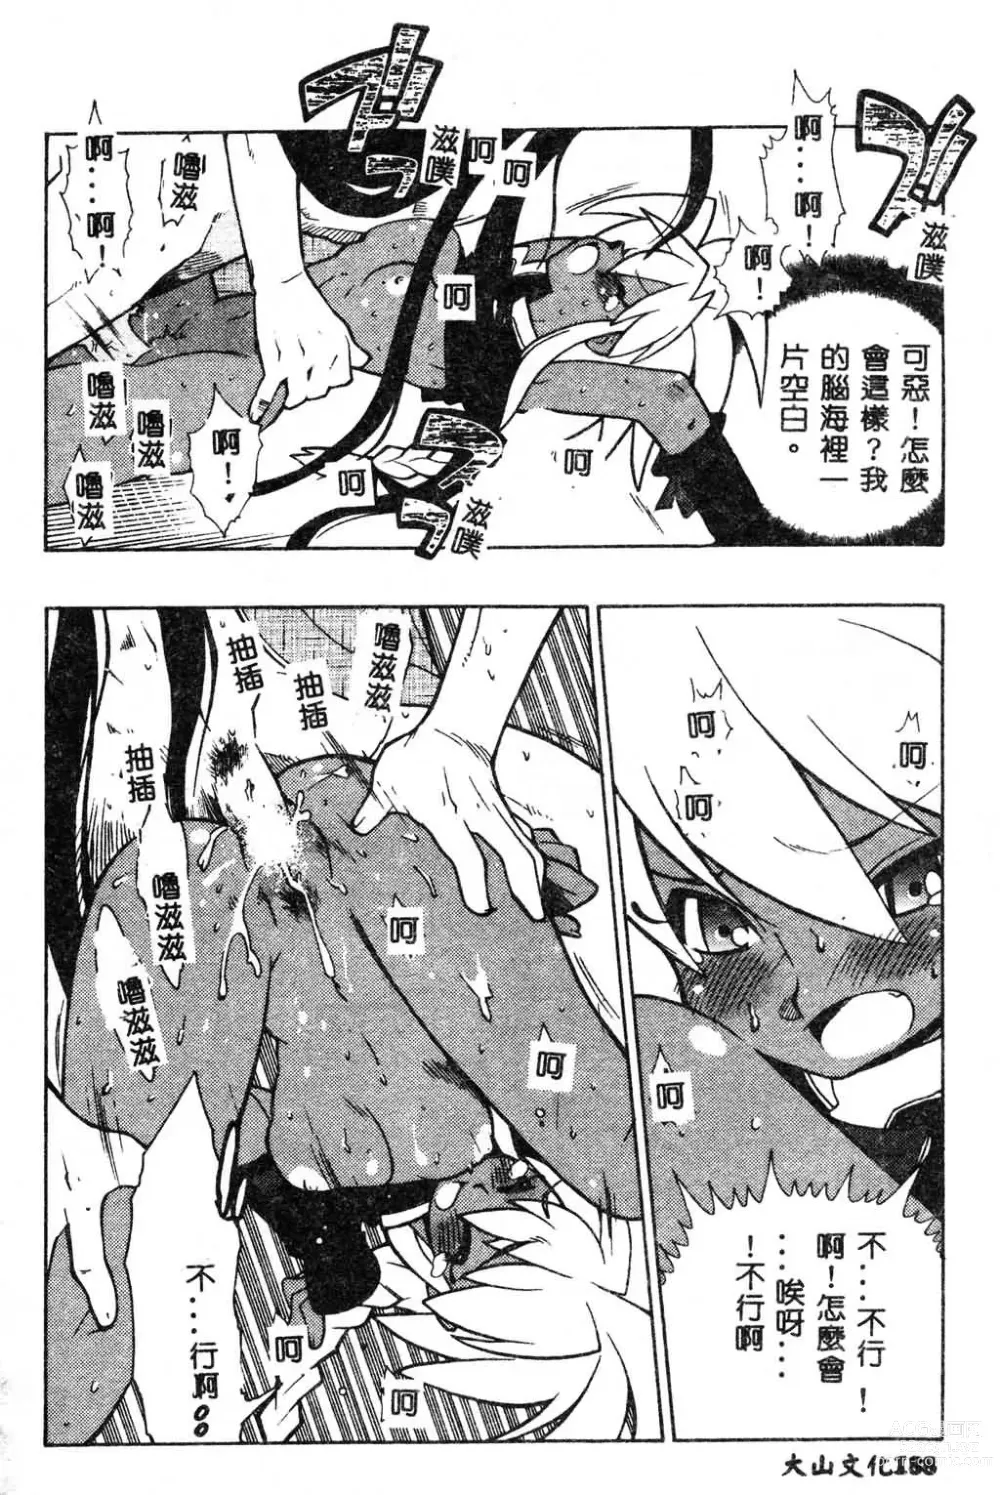 Page 202 of manga Fuusatsu Hyakke